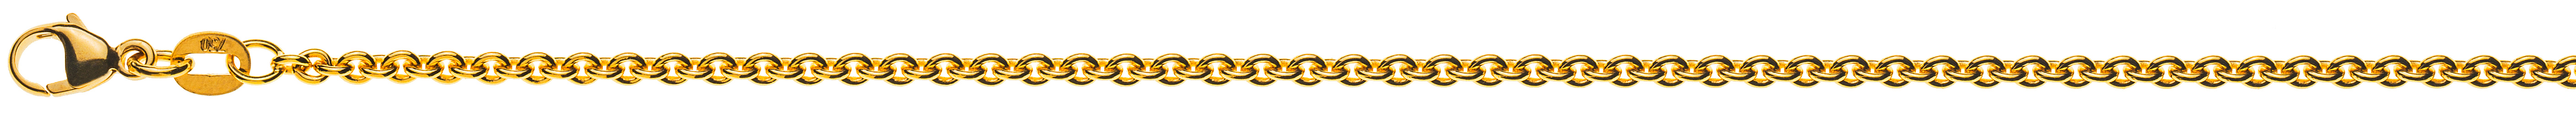 AURONOS Prestige Halskette Gelbgold 18K Rundanker 50cm 2.3mm